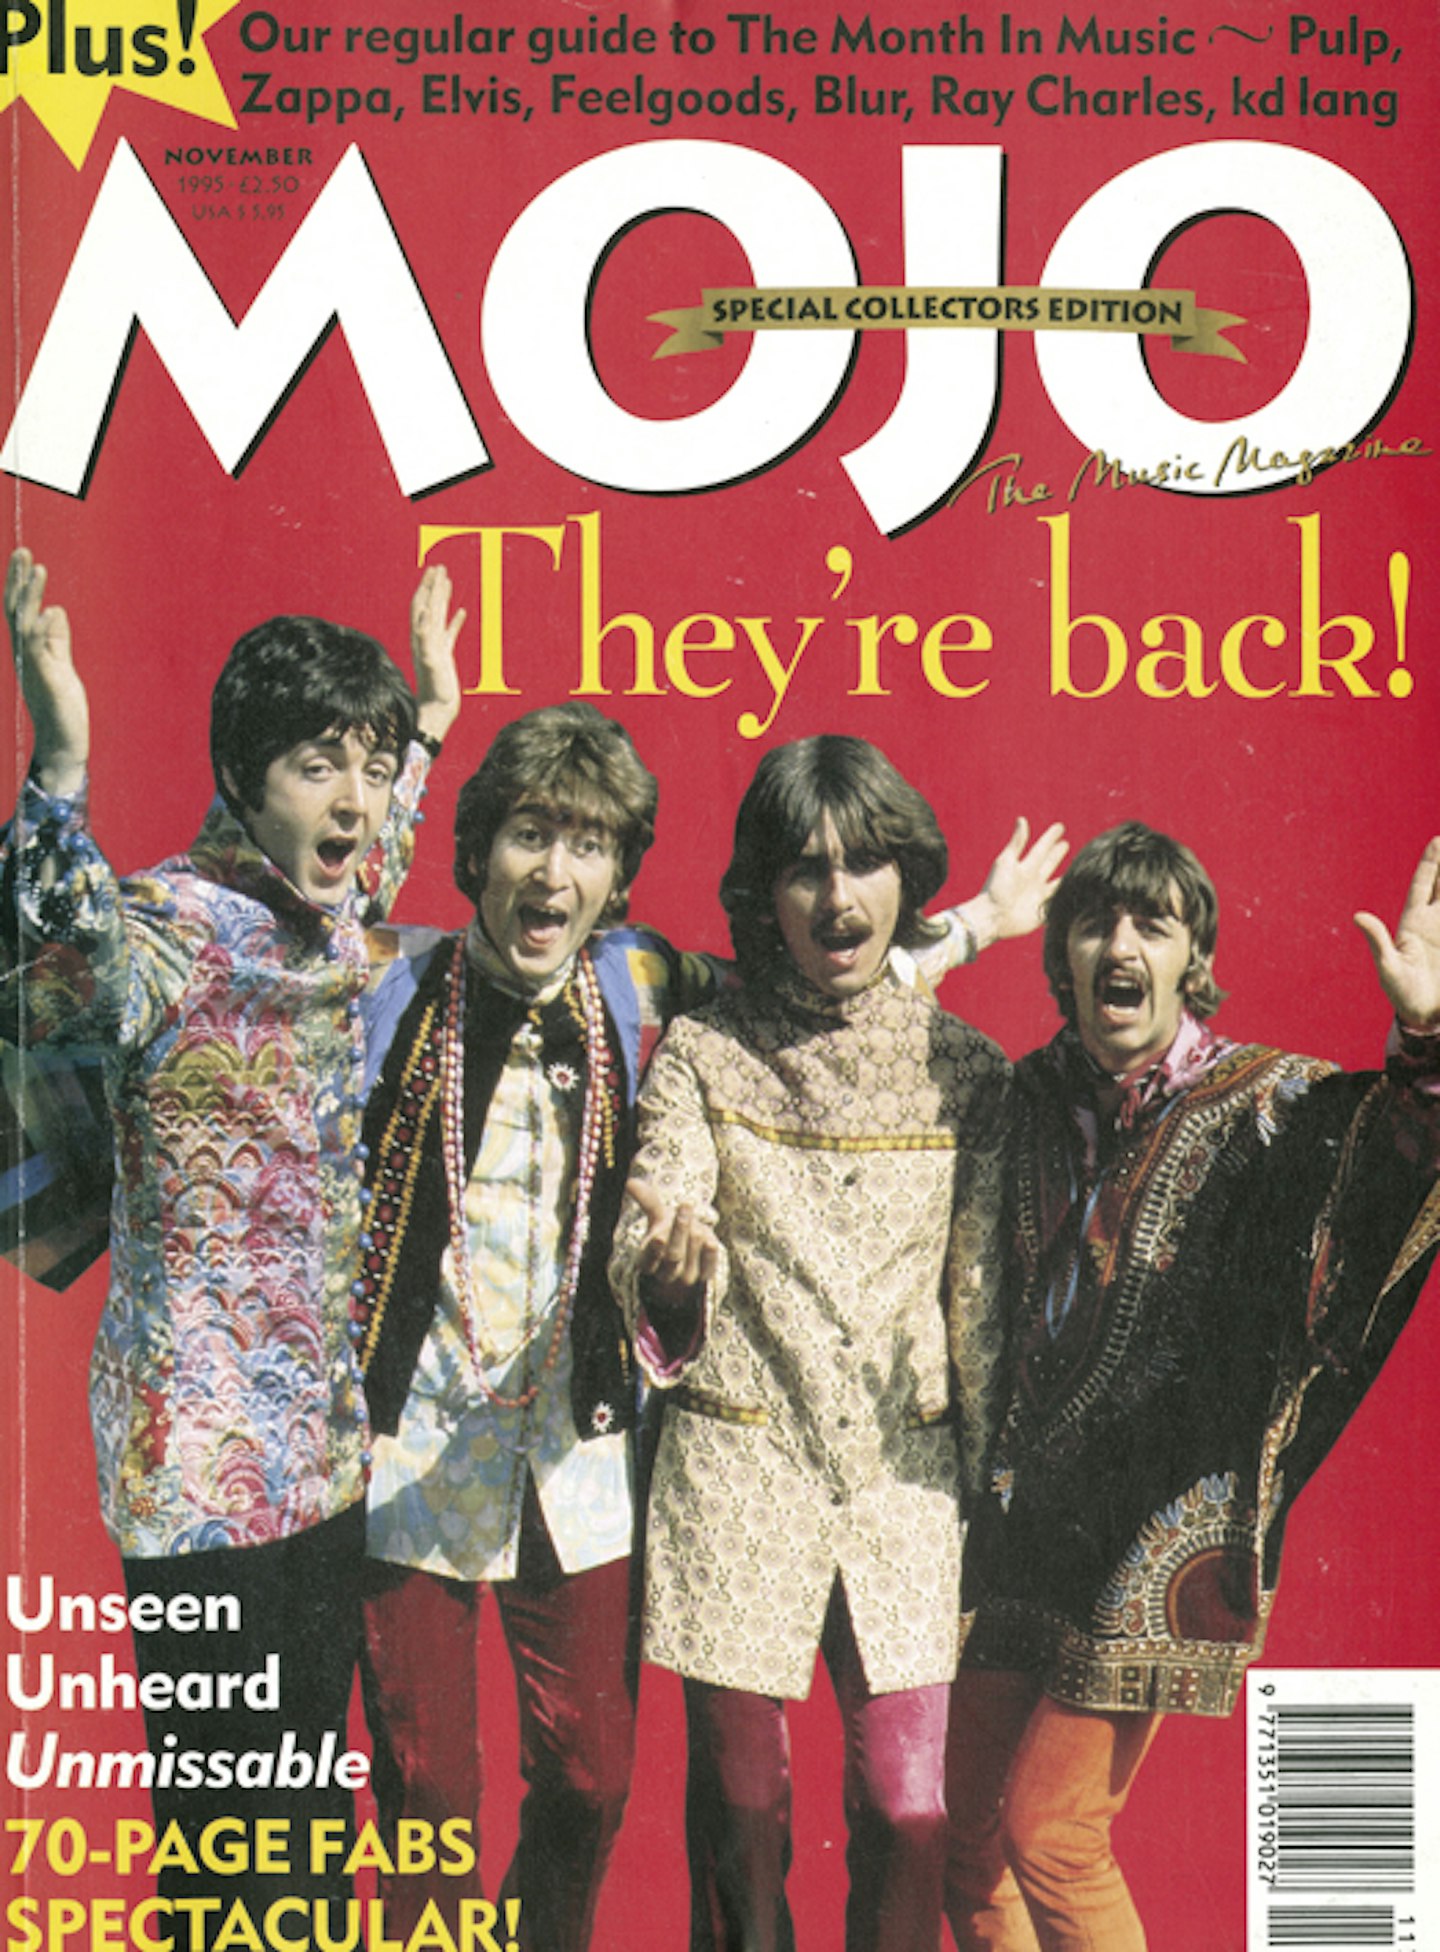 MOJO Issue 24 2 / November 1995